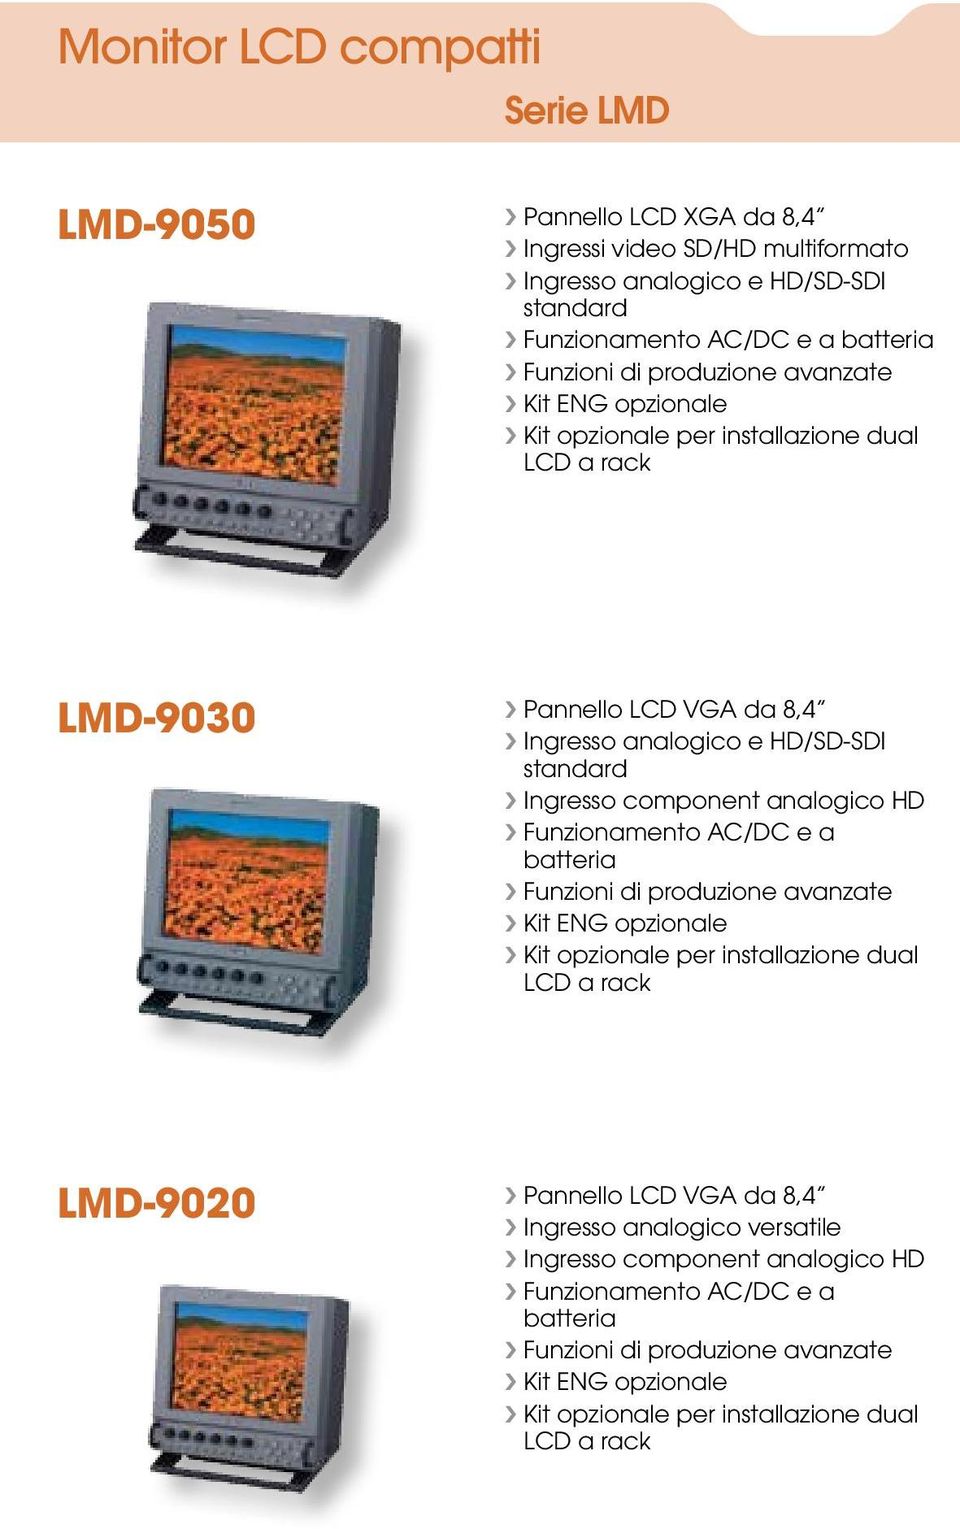 analogico HD Funzionamento AC/DC e a batteria Funzioni di produzione avanzate Kit ENG opzionale Kit opzionale per installazione dual LCD a rack LMD-9020 Pannello LCD VGA da 8,4